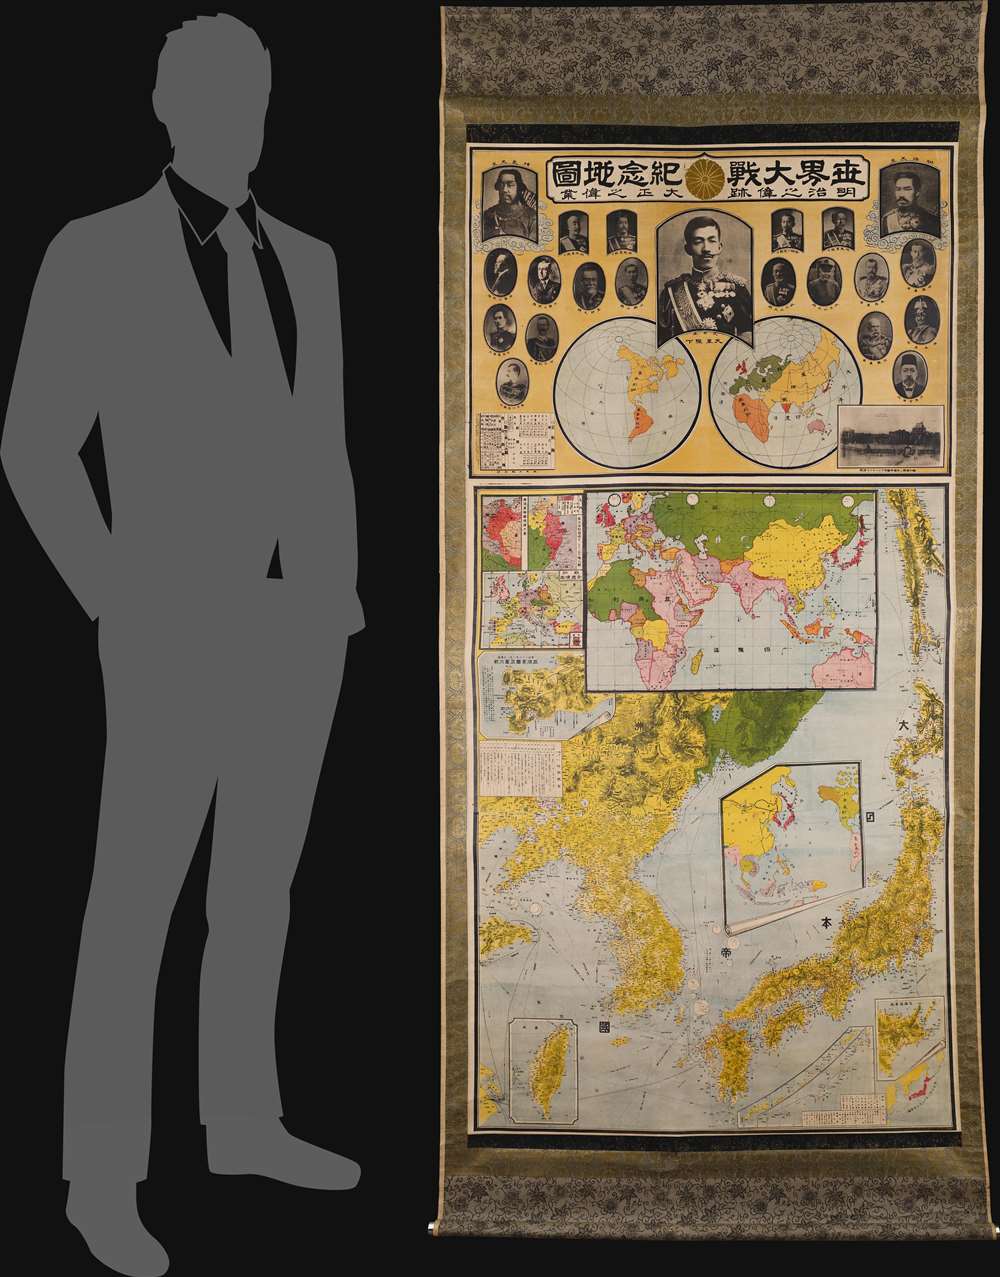 世界大戰紀念地圖 明治之偉跡 大正之偉業  / [Commemorative Map of the World War. The Great Footprint of Meiji, the Great Undertaking of Taisho]. - Alternate View 1